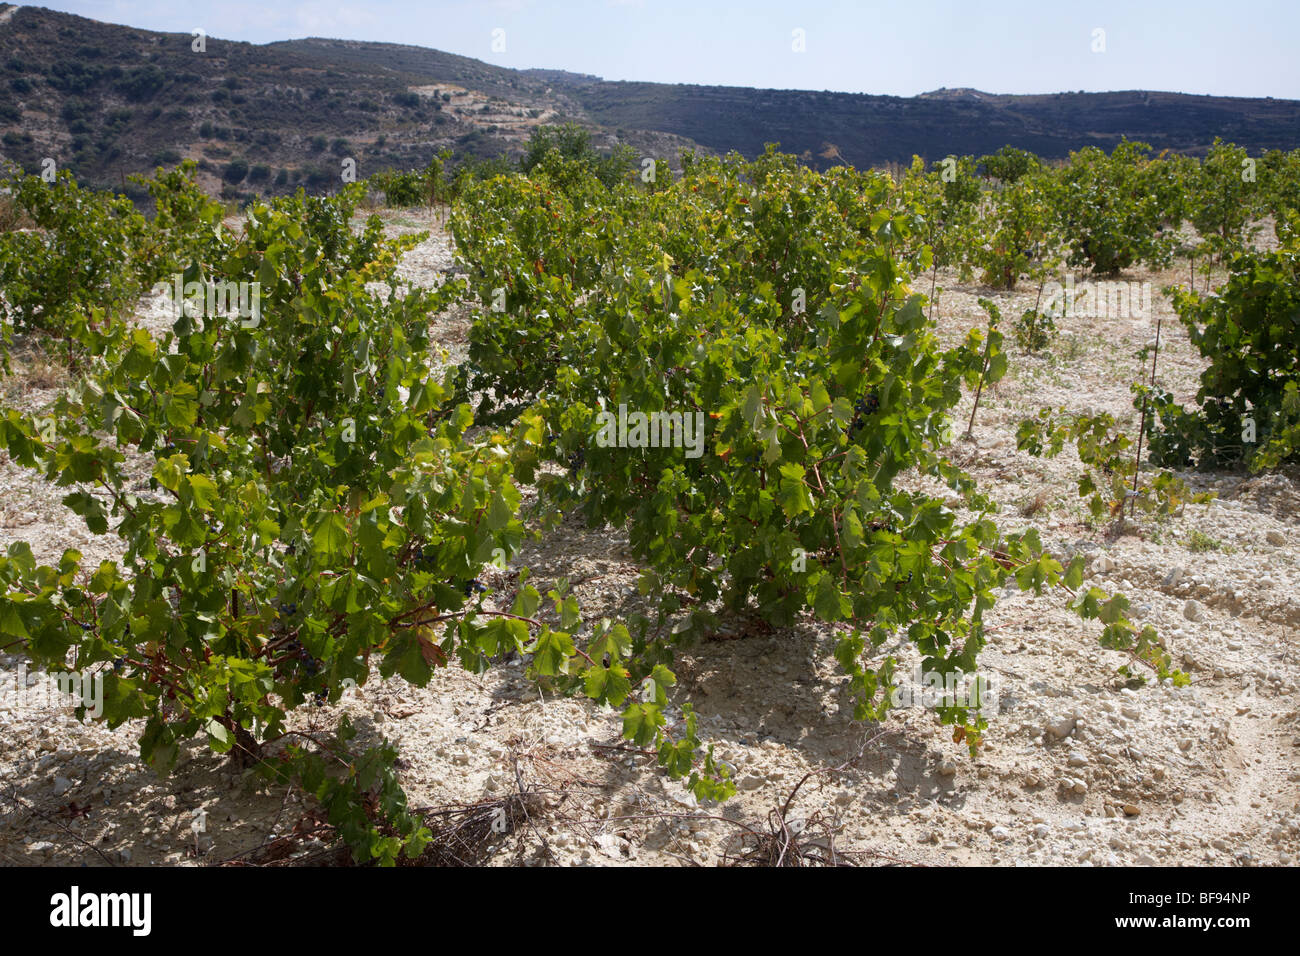 Vignes en calcaire dans un village près de vignoble cave vin omodos troodos région république de Chypre Europe Banque D'Images